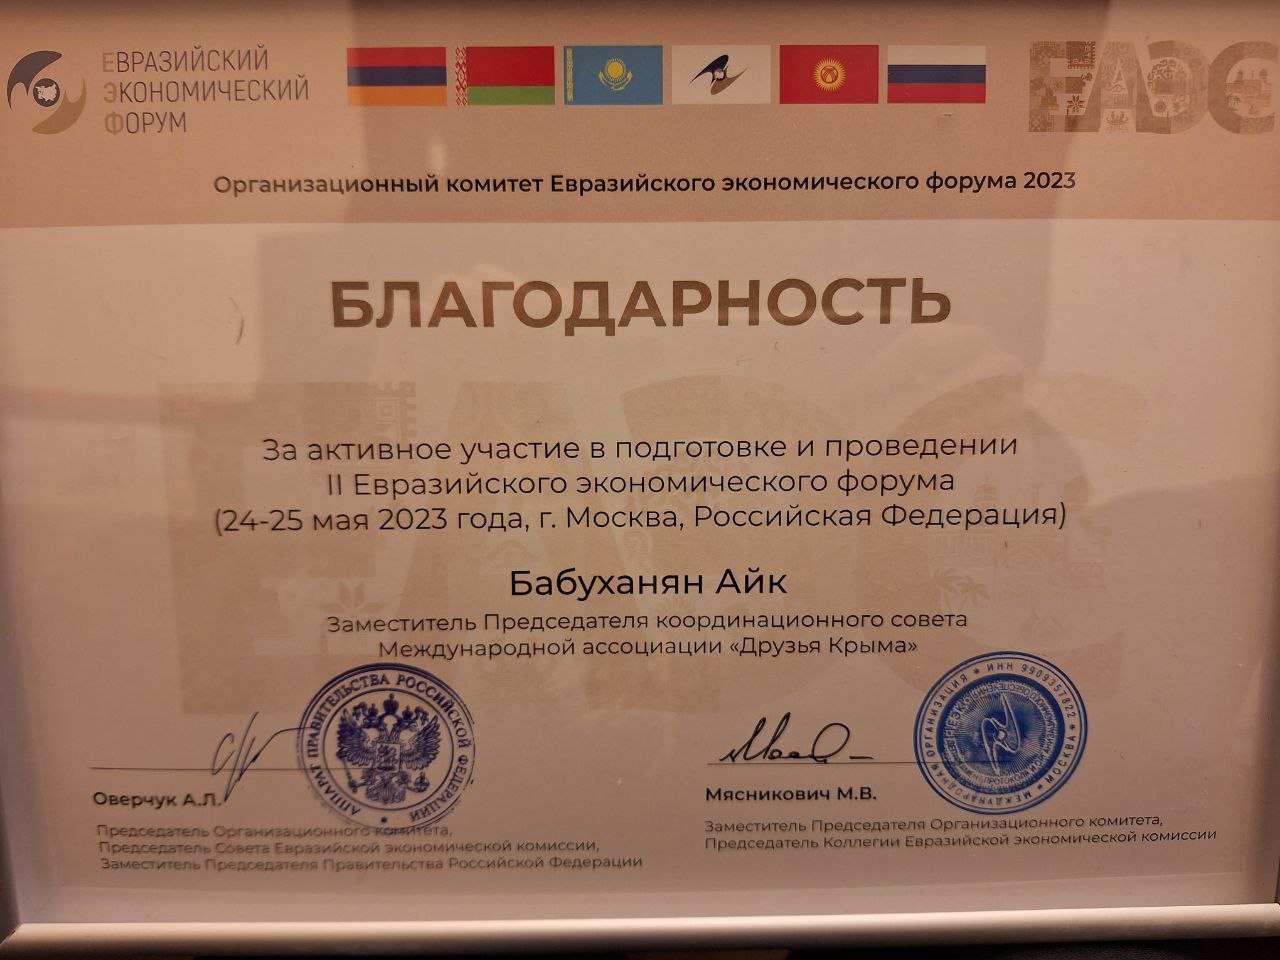 Հայկ Բաբուխանյանը շնորհակալագիր է ստացել ՌԴ փոխվարչապետ Ա. Օվերչուկից